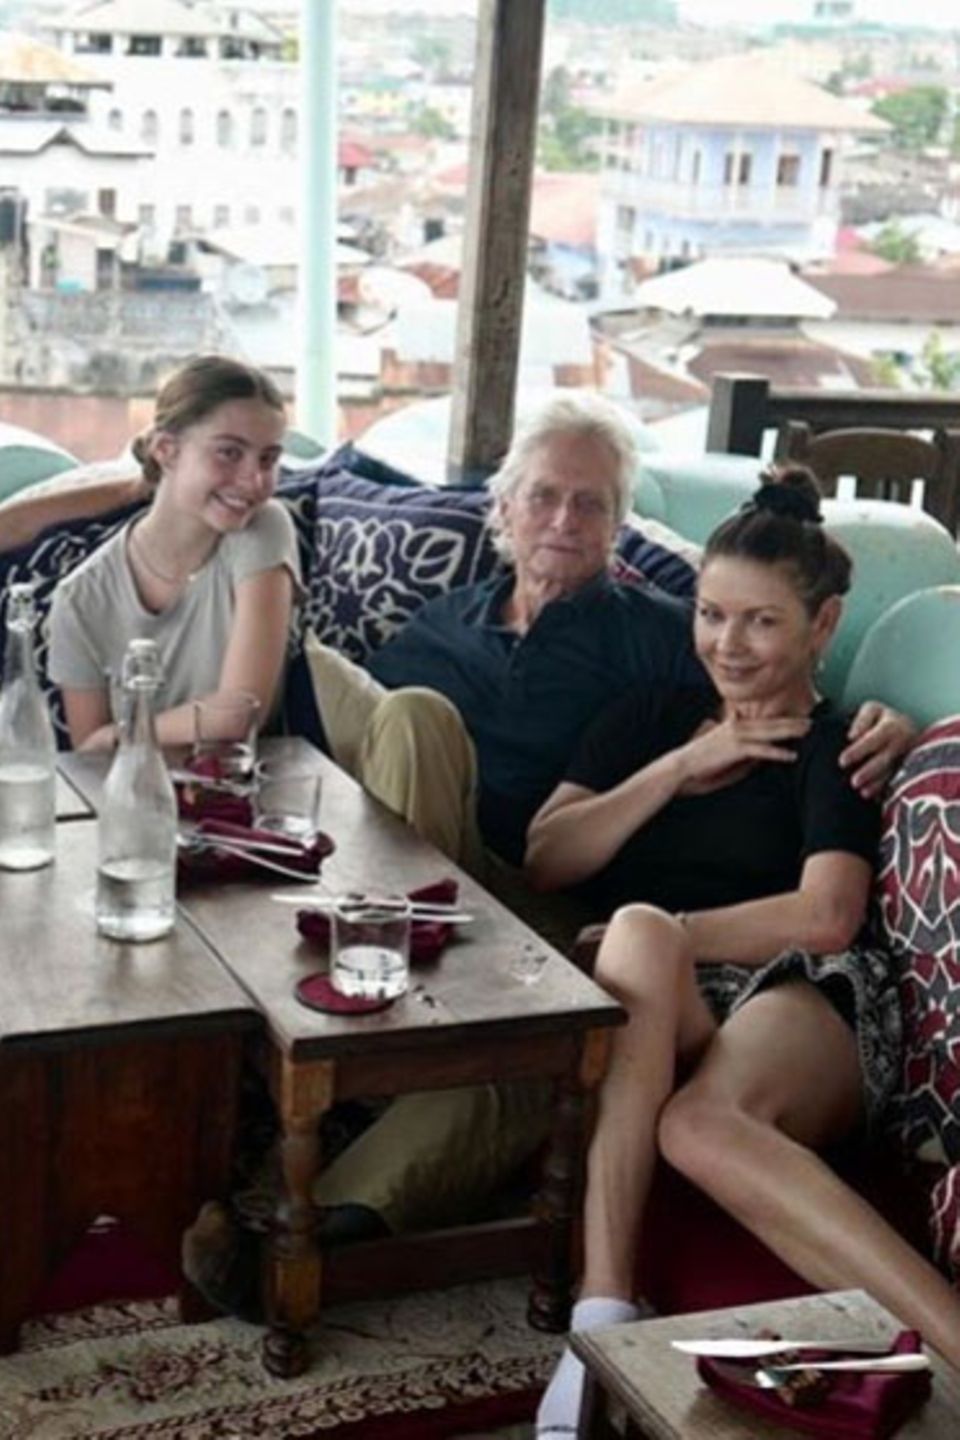 29. Dezember 2019  Catherine Zeta-Jones und ihr Mann Michael Douglas gönnen sich mit den gemeinsamen Kindern eine schöne Auszeit auf der Insel Sansibar. Mit diesem netten Familienfoto senden sie uns entspannte Grüße zum Sonntag via Instagram.